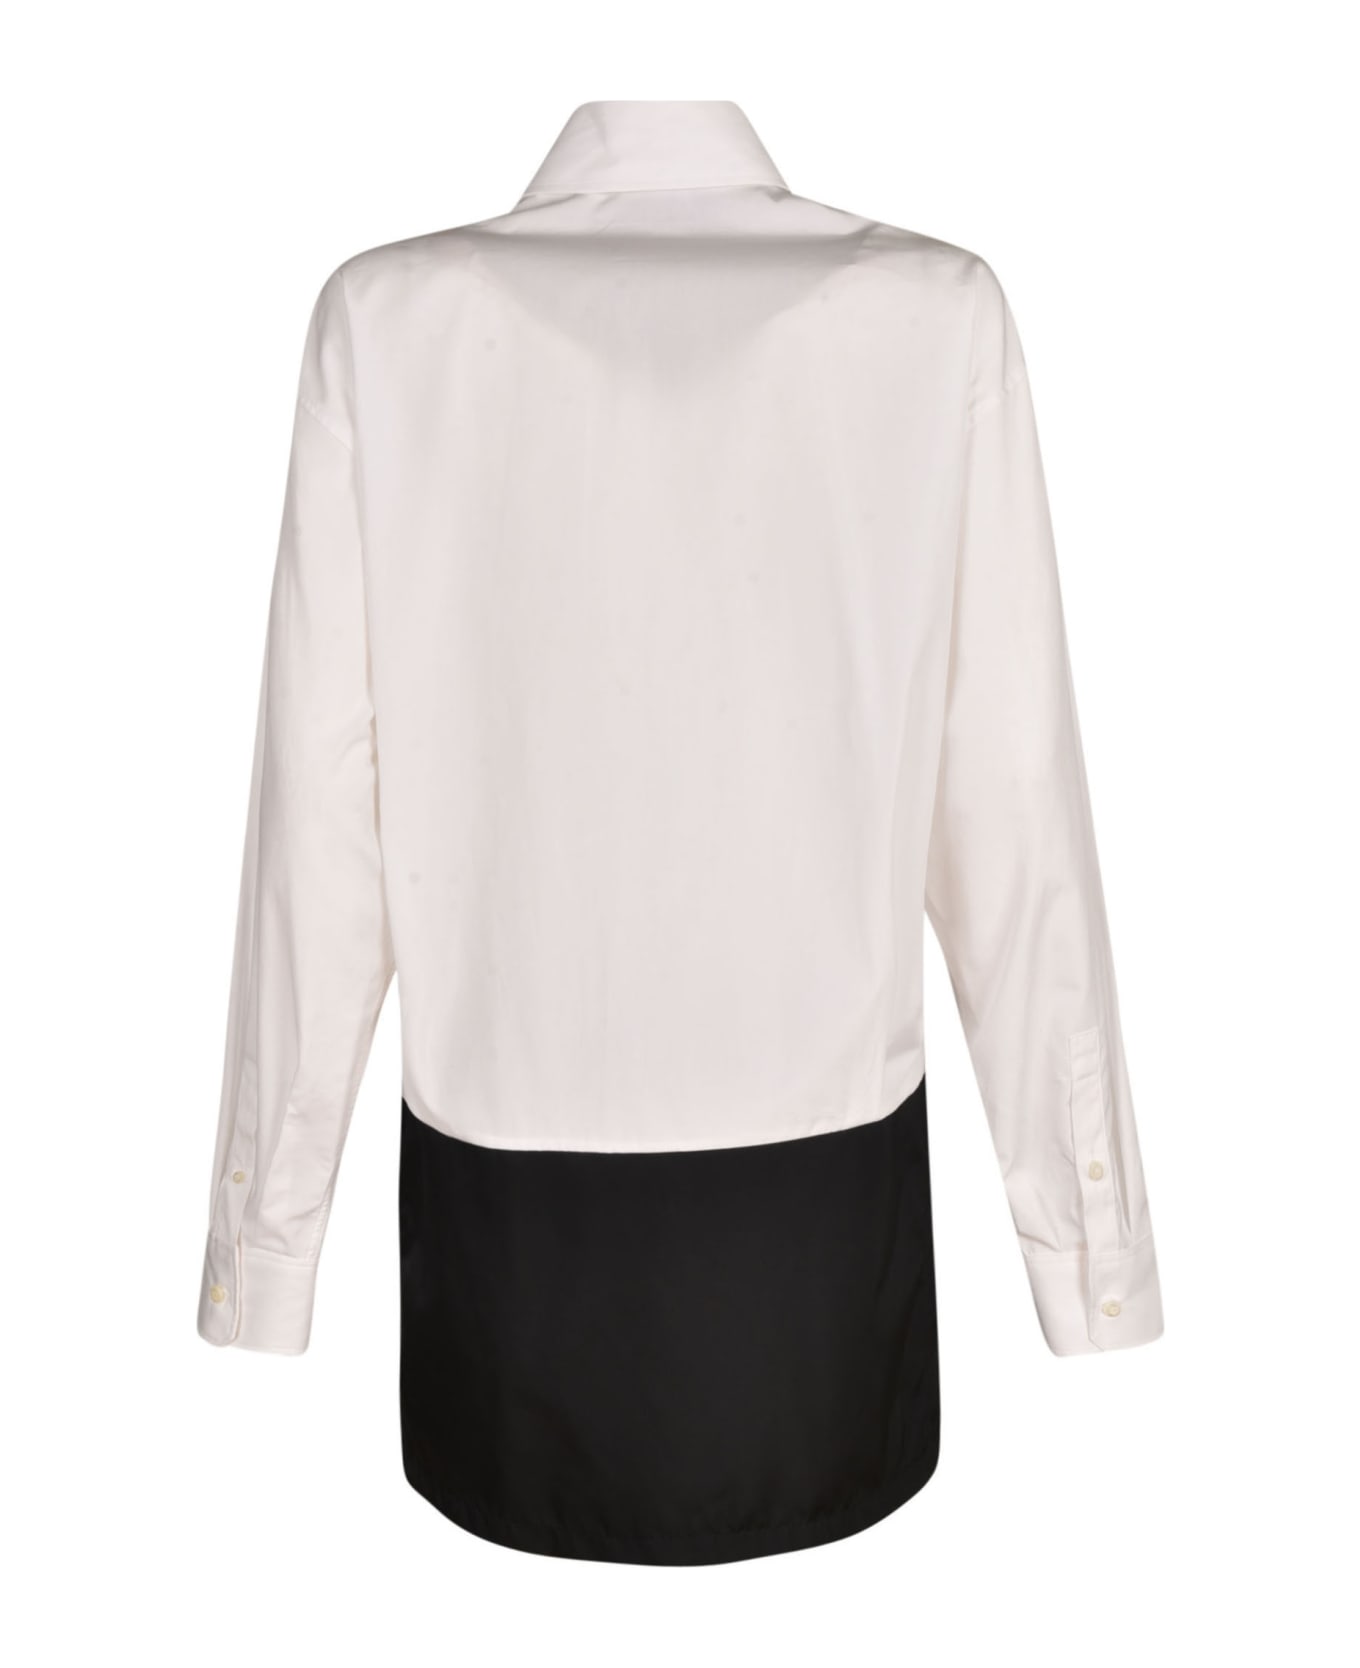 Prada Buttoned Shirt Dress - White/Black